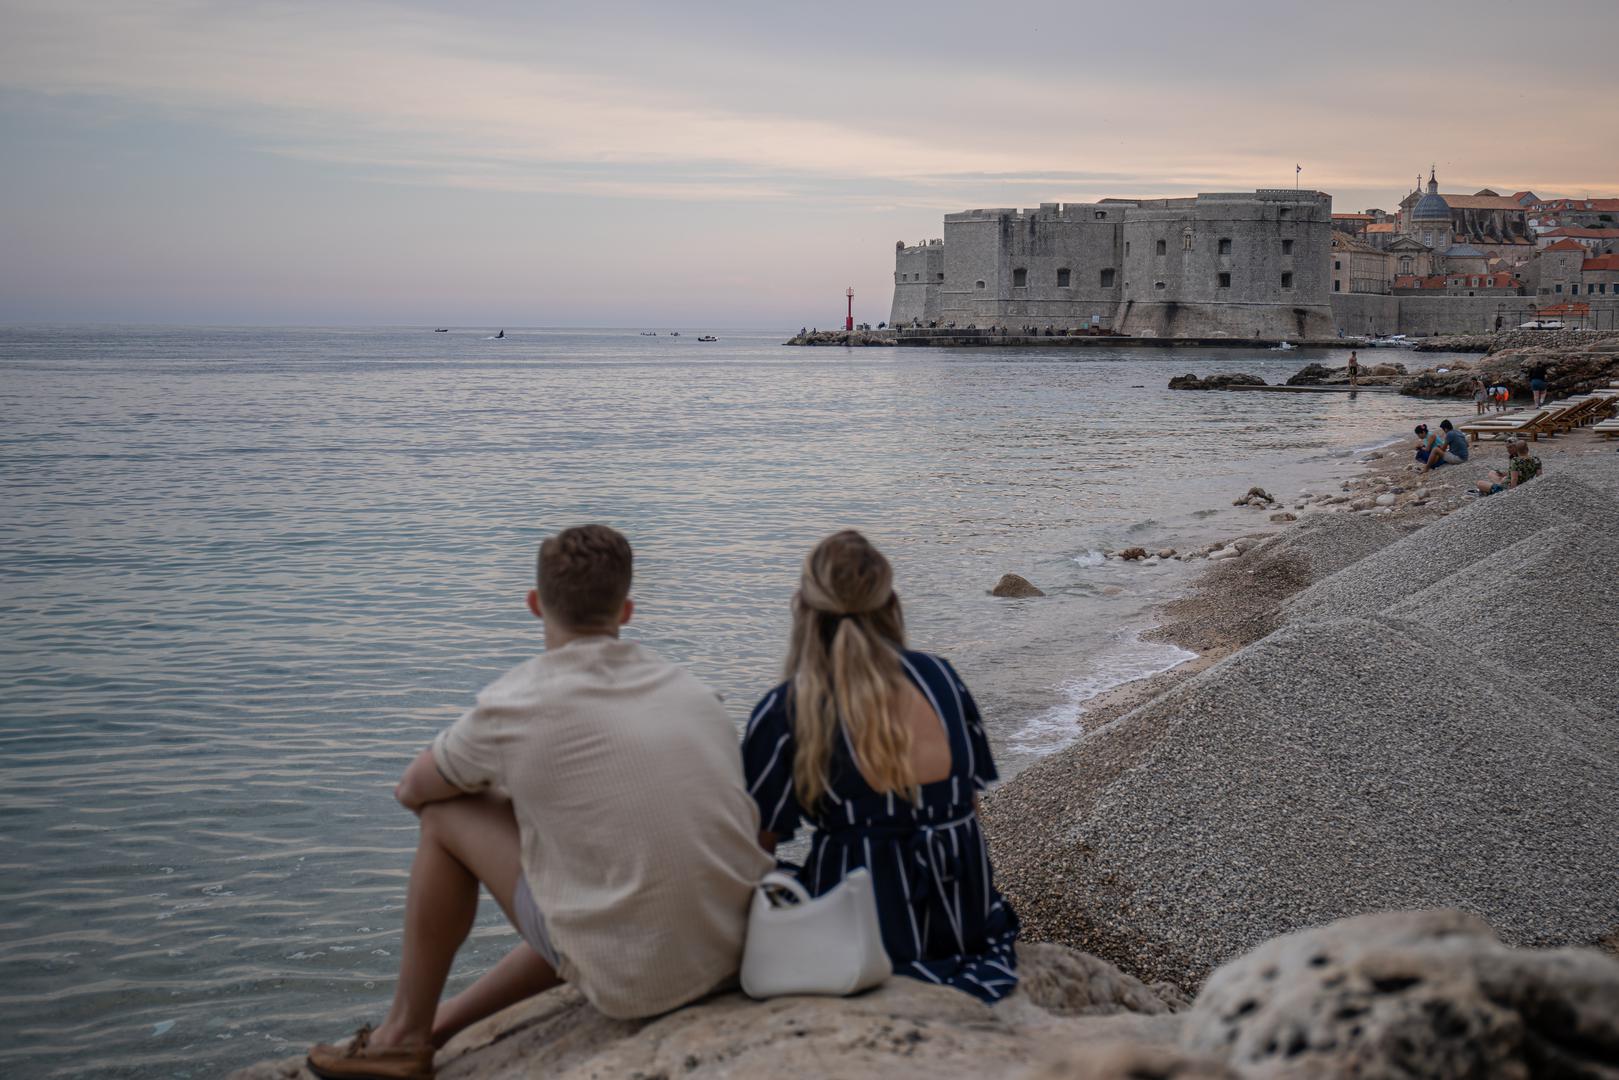 Plaža Banje, Dubrovnik. Ovo je vrlo popularna šljunčana plaža, smještena izvan dubrovačkih gradskih zidina. S plaže pogled seže na stari dio grada Dubrovnika i predivni nenaseljeni otok Lokrum. Na plaži Banje nalaze se tuševi, prostor za presvlačenje, ležaljke i suncobrani koji se iznajmljuju.